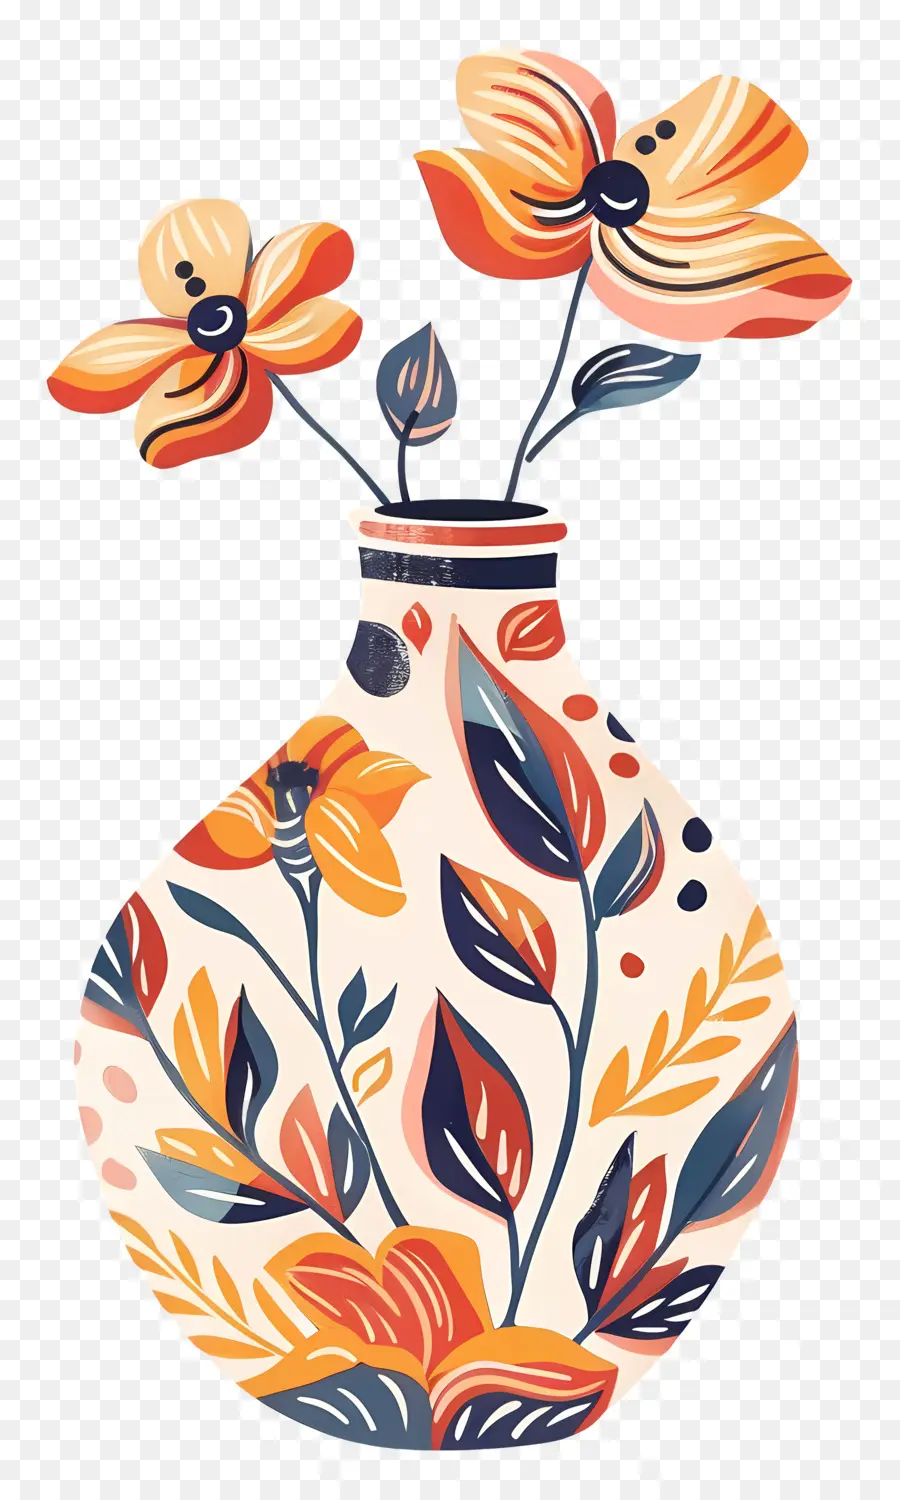 arancione - Vaso artistico con una composizione floreale colorata